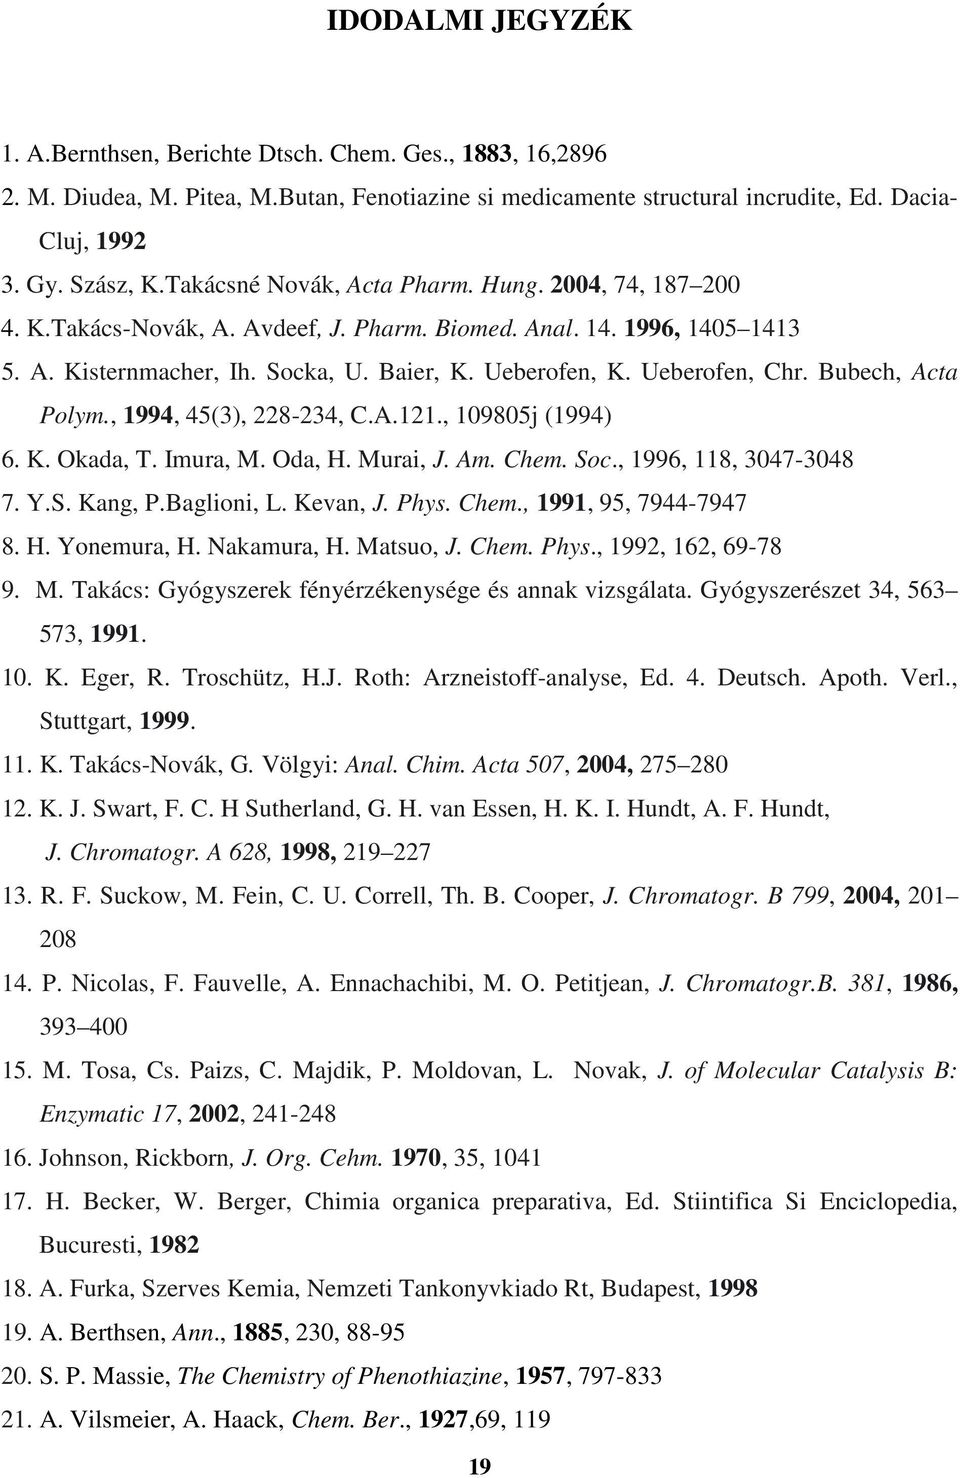 Bubech, Acta Polym., 1994, 45(3), 228-234, C.A.121., 109805j (1994) 6. K. Okada, T. Imura, M. Oda,. Murai, J. Am. Chem. oc., 1996, 118, 3047-3048 7. Y.. Kang, P.Baglioni, L. Kevan, J. Phys. Chem., 1991, 95, 7944-7947 8.